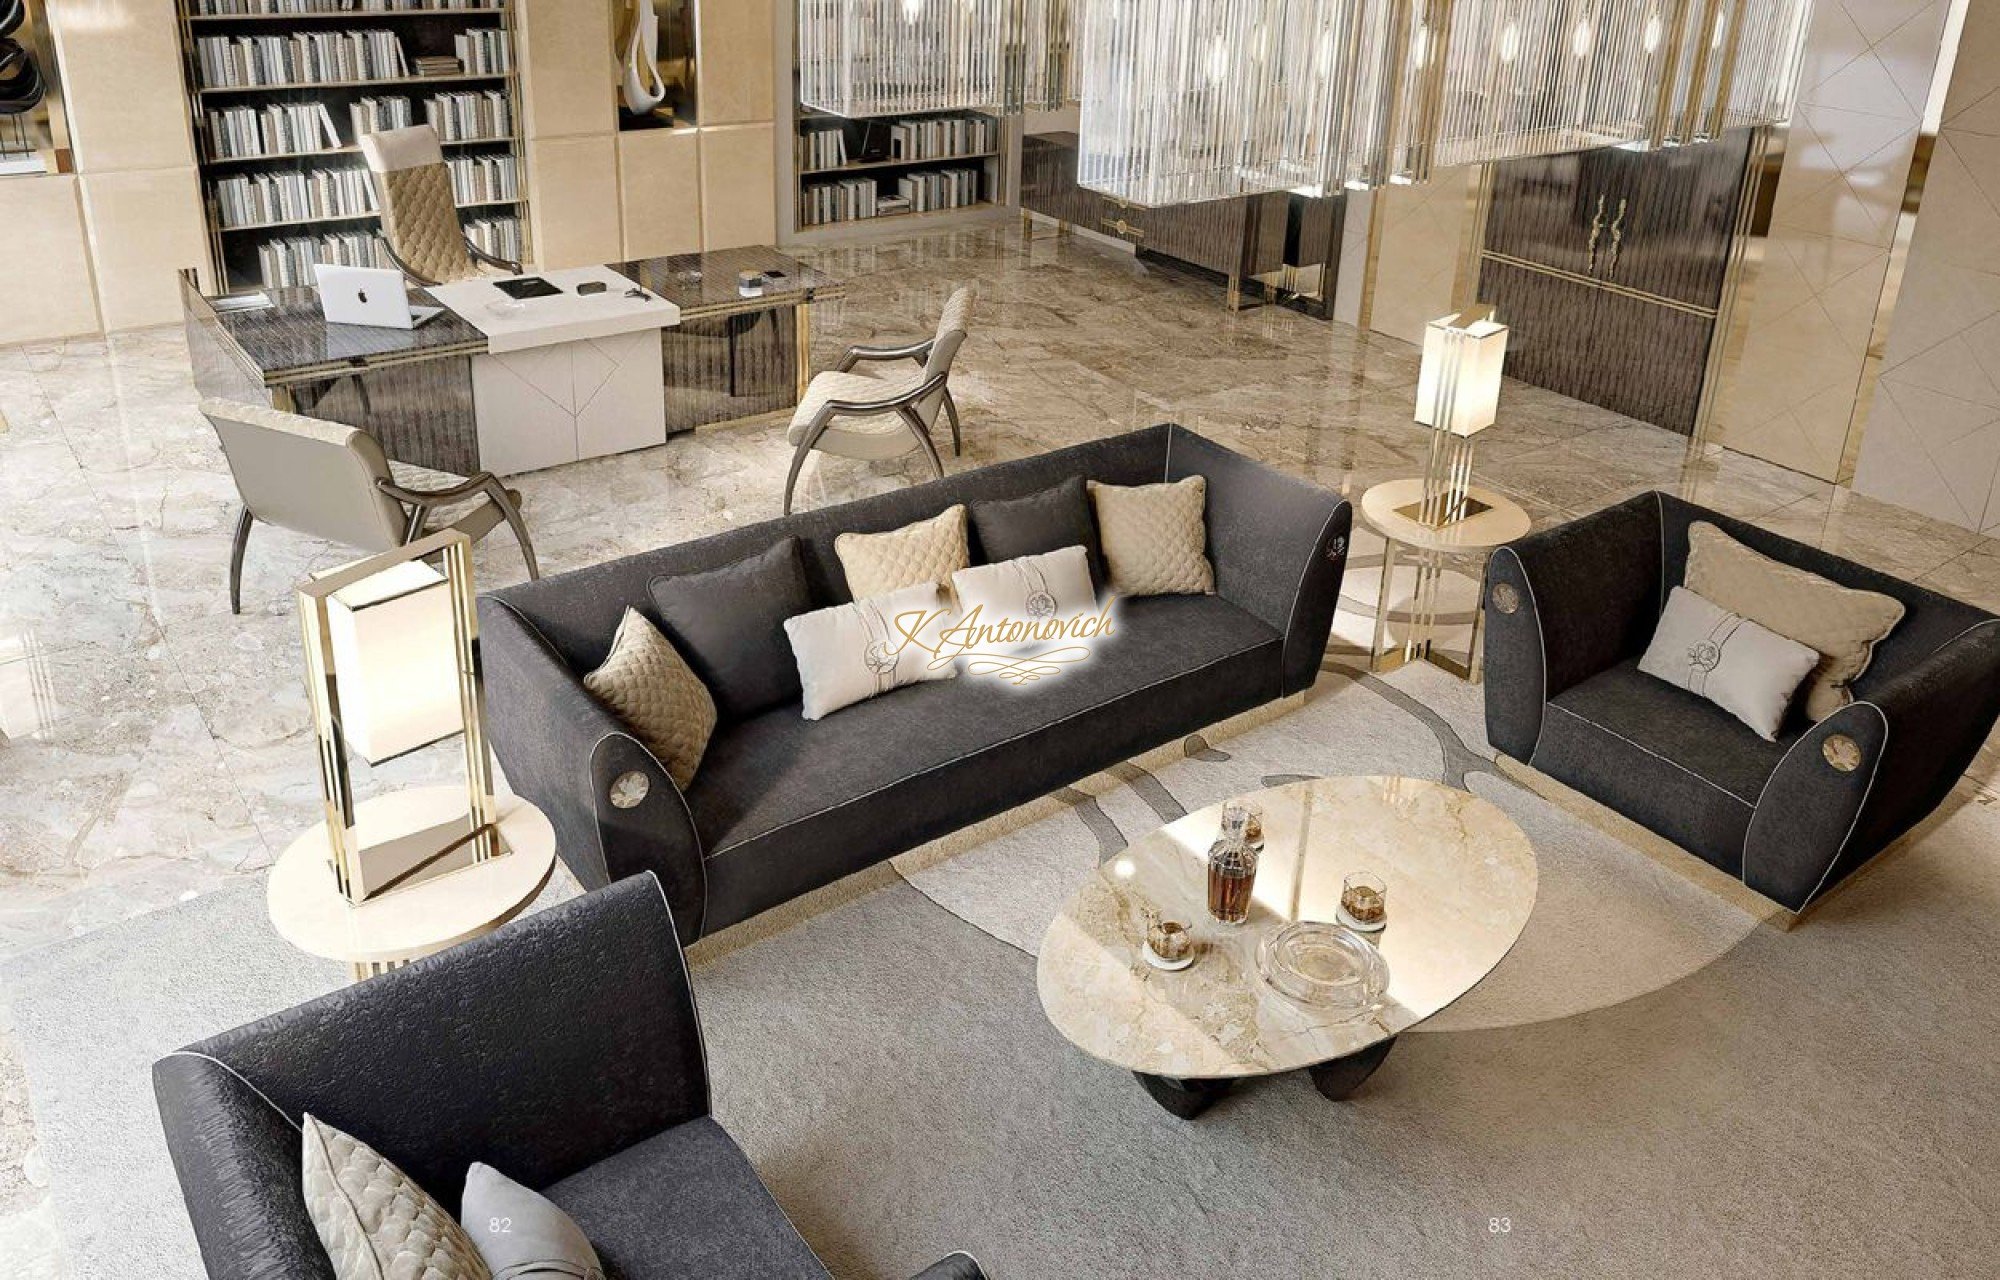 Italian Contemporary Furniture Luxury Interior Design Company In